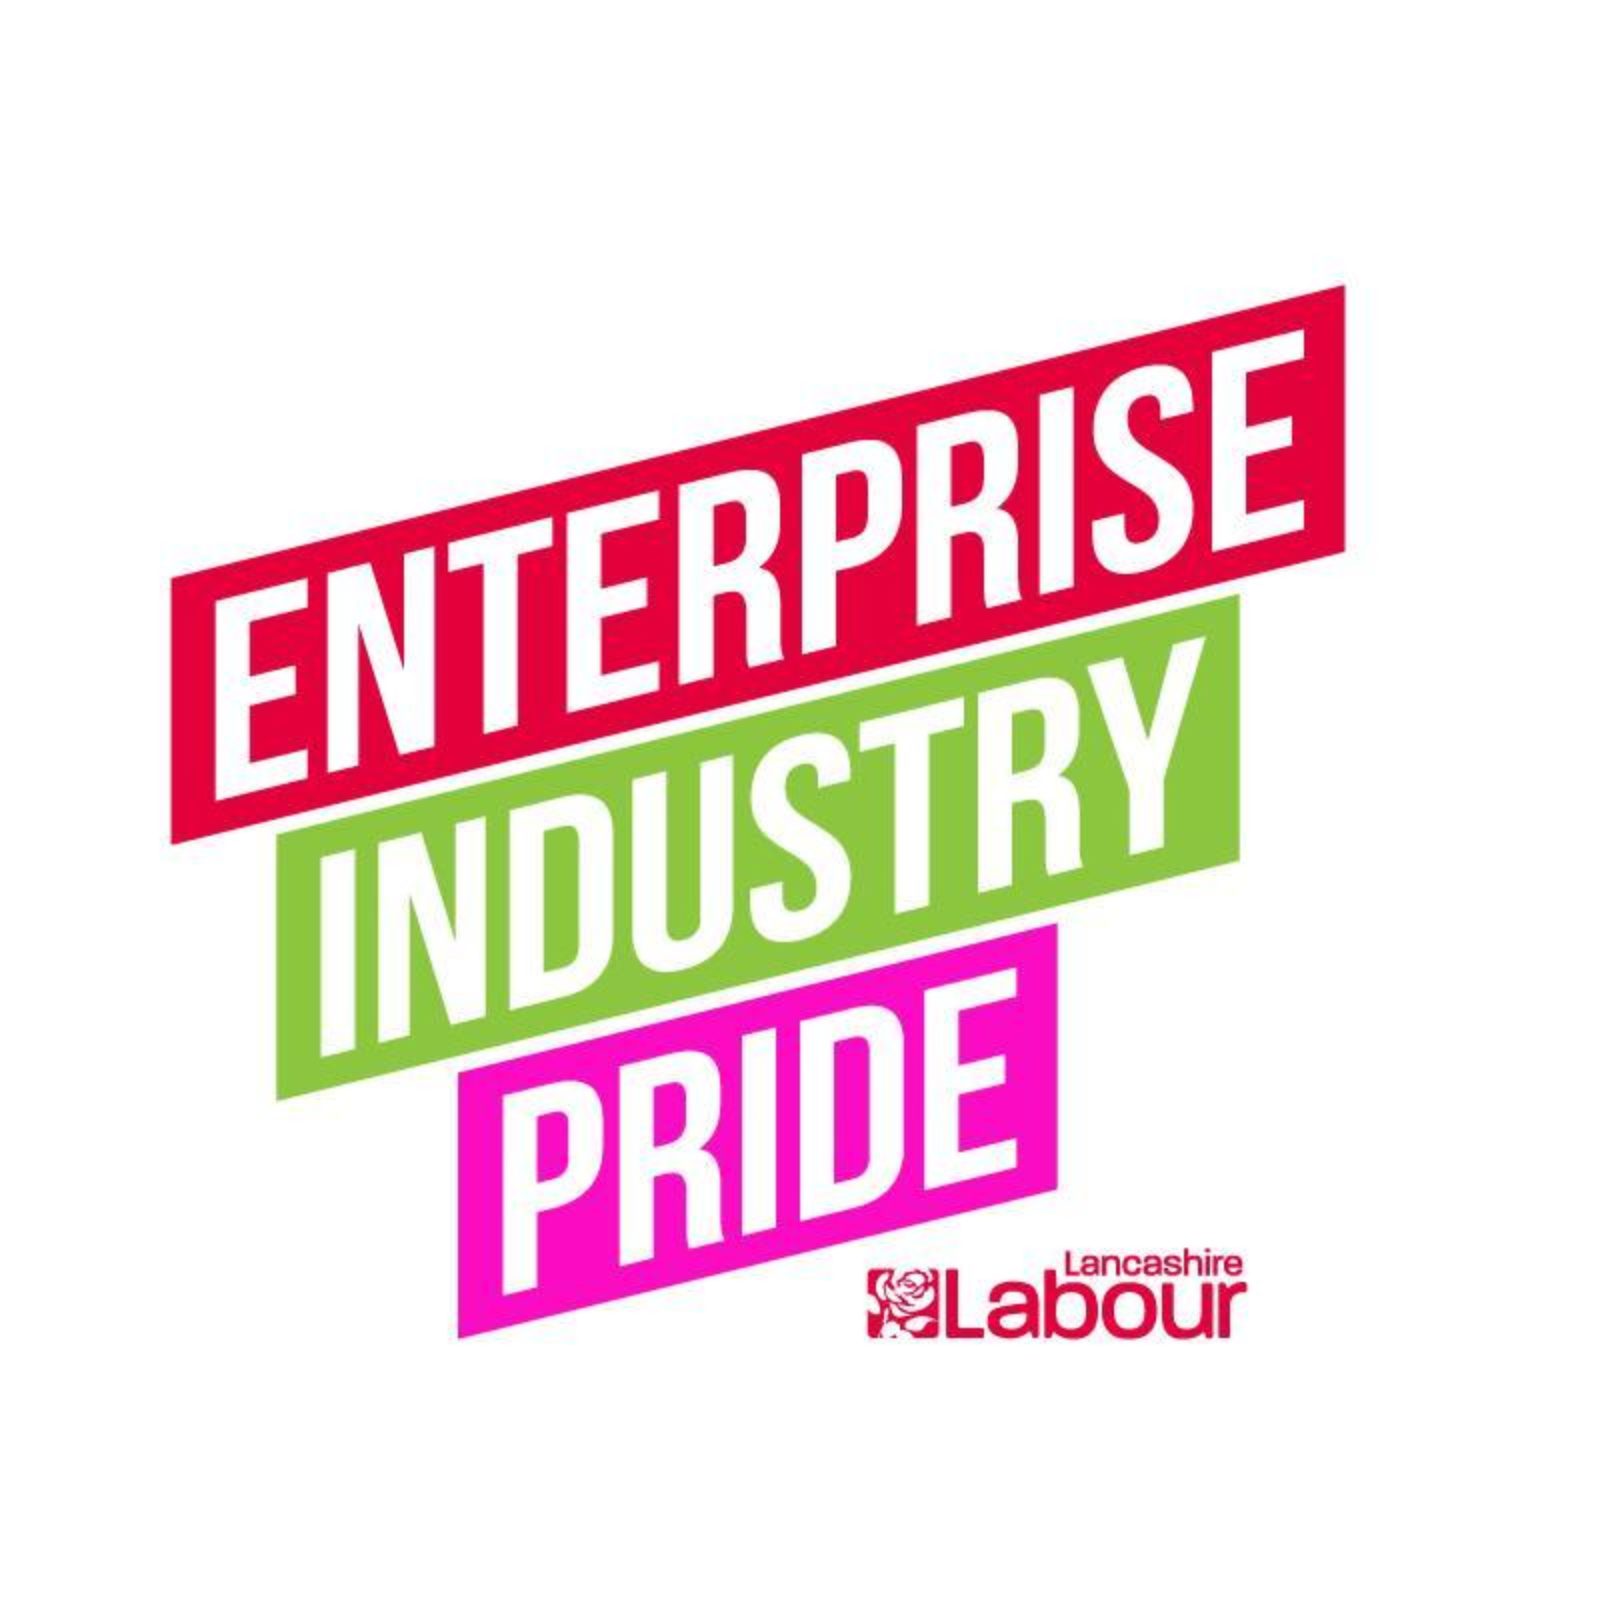 Lancashire Labour - Enterprise, Industry, Pride